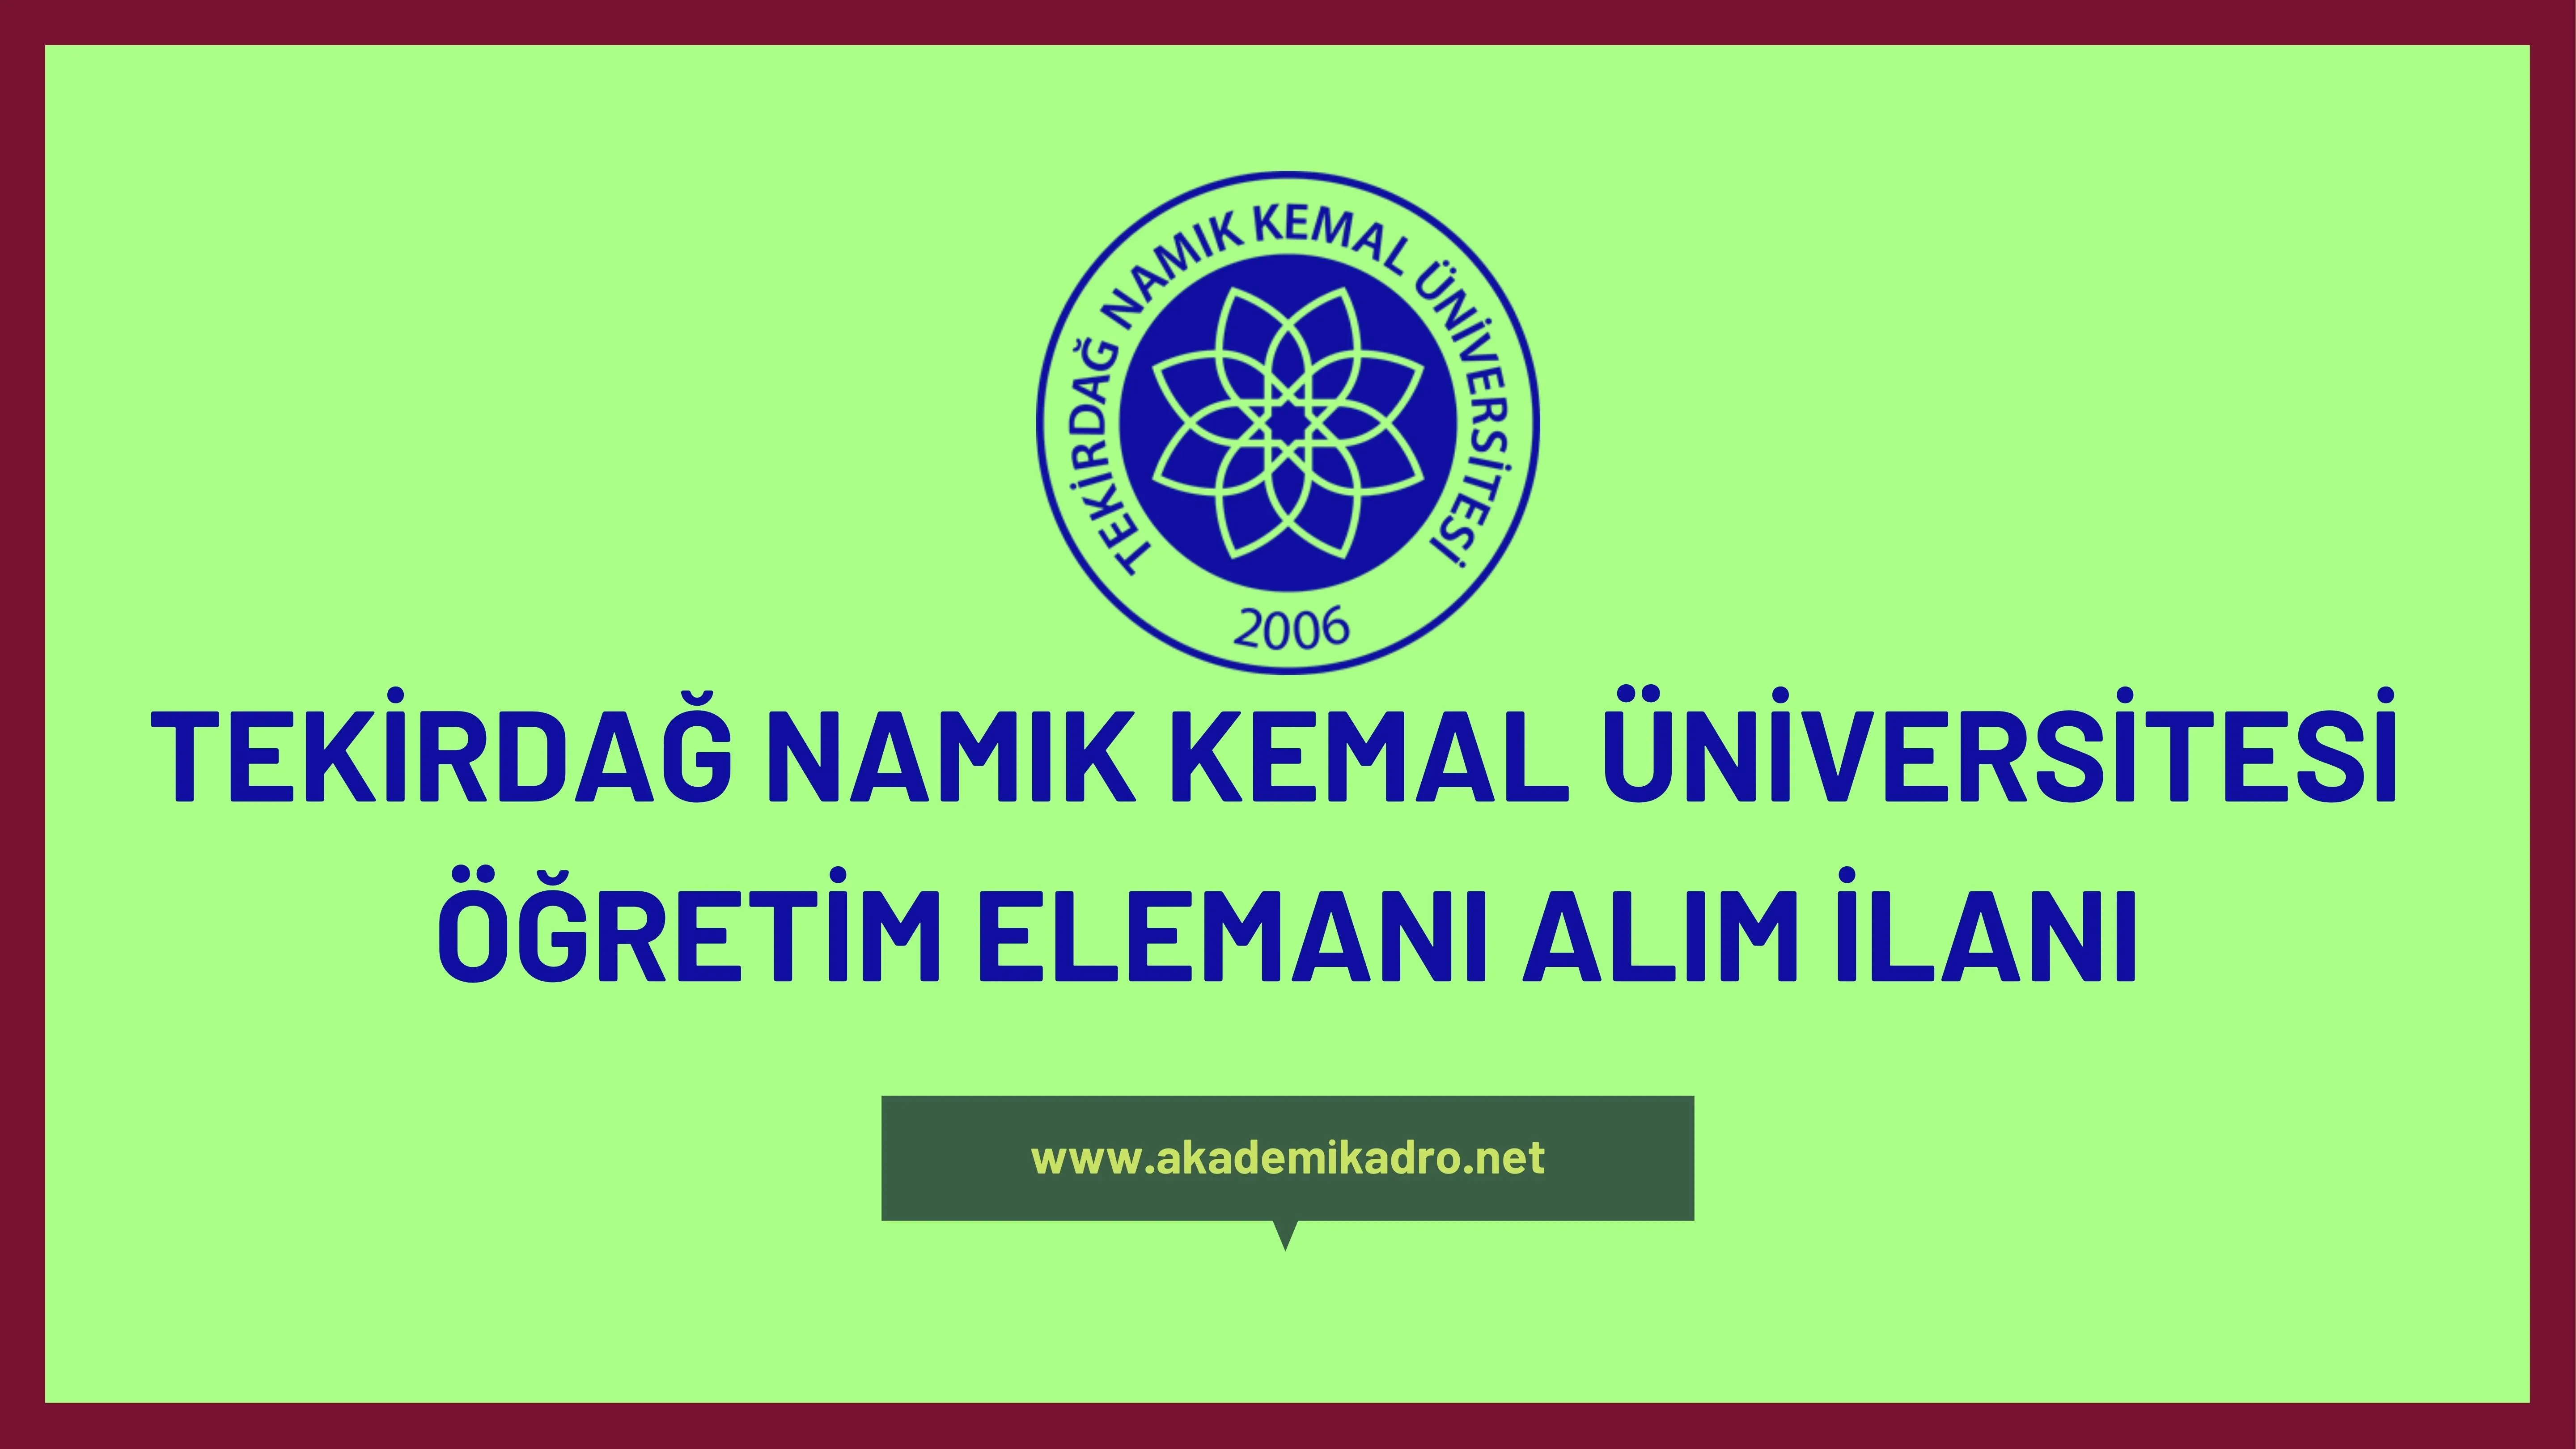 Tekirdağ Namık Kemal Üniversitesi 12 Araştırma görevlisi ve öğretim görevlisi alacaktır.